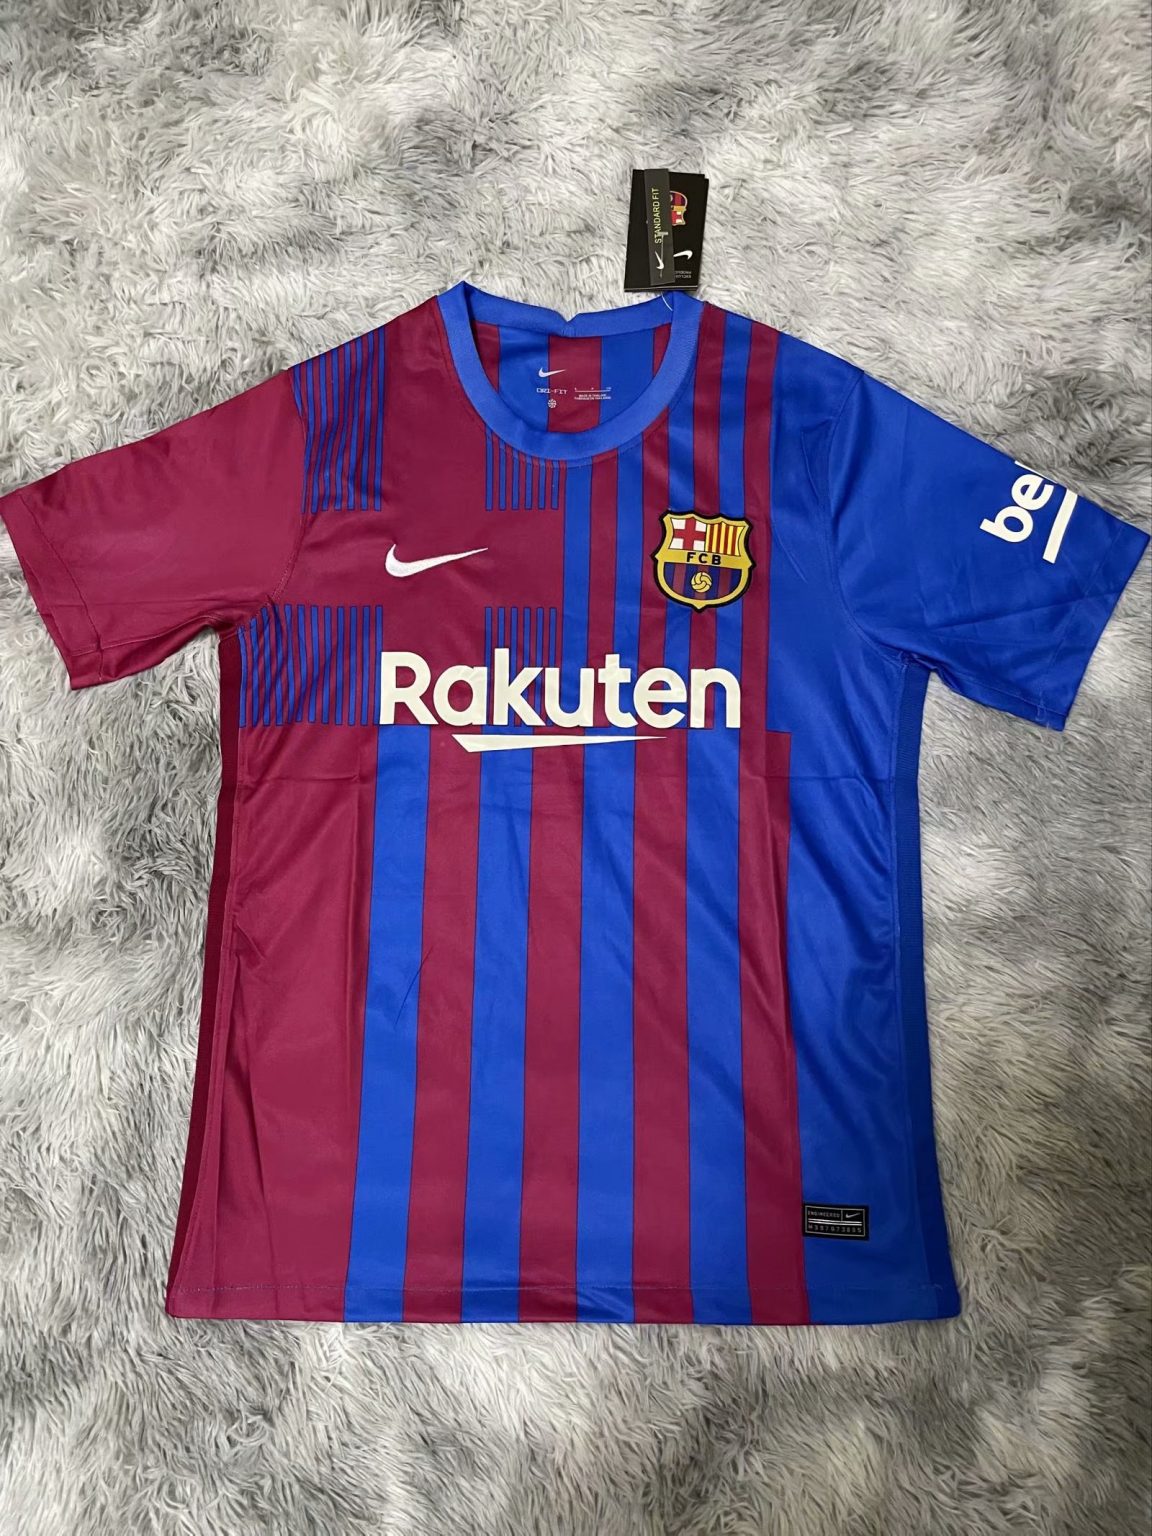 Les nouveaux maillots de foot FC Barcelone 2022 avec Nike